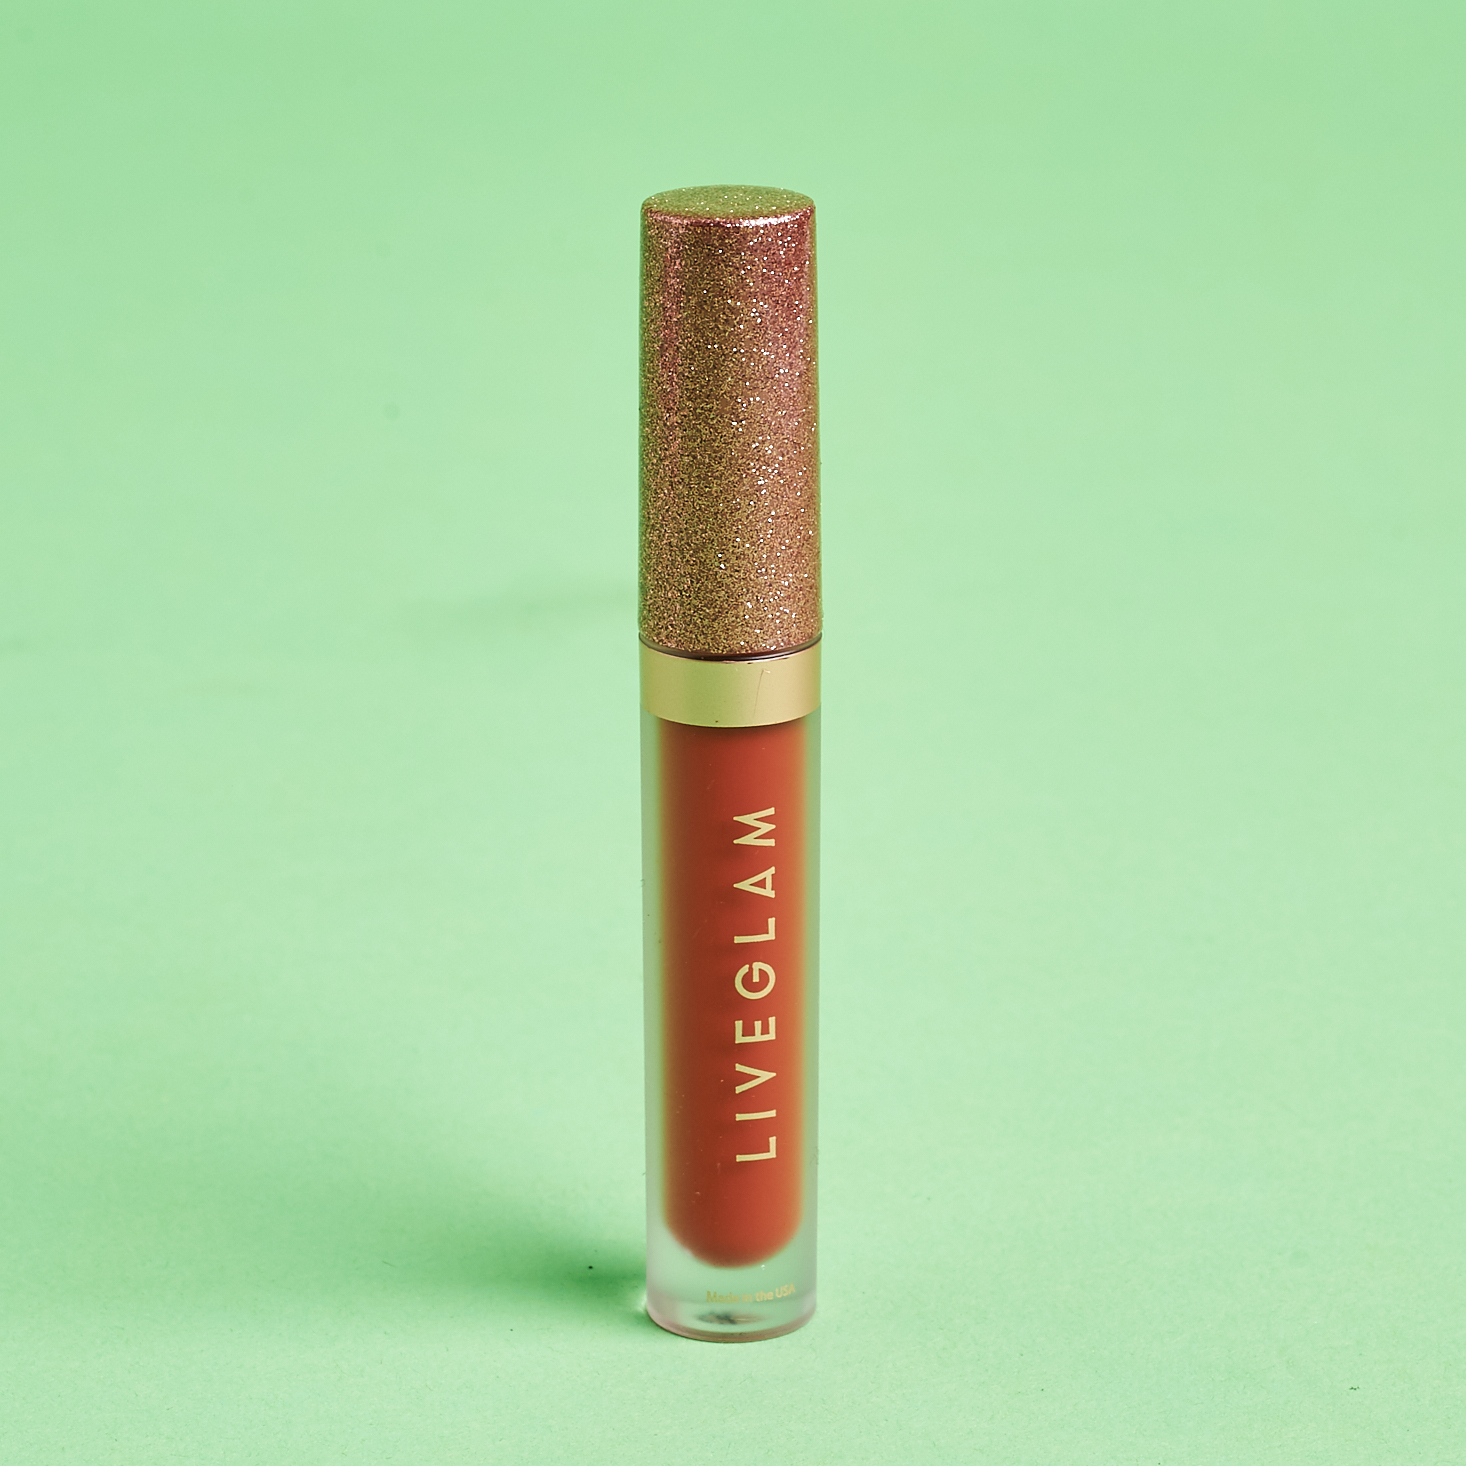 rose gold glitter cap on frosted tube of burnt orange lipstick